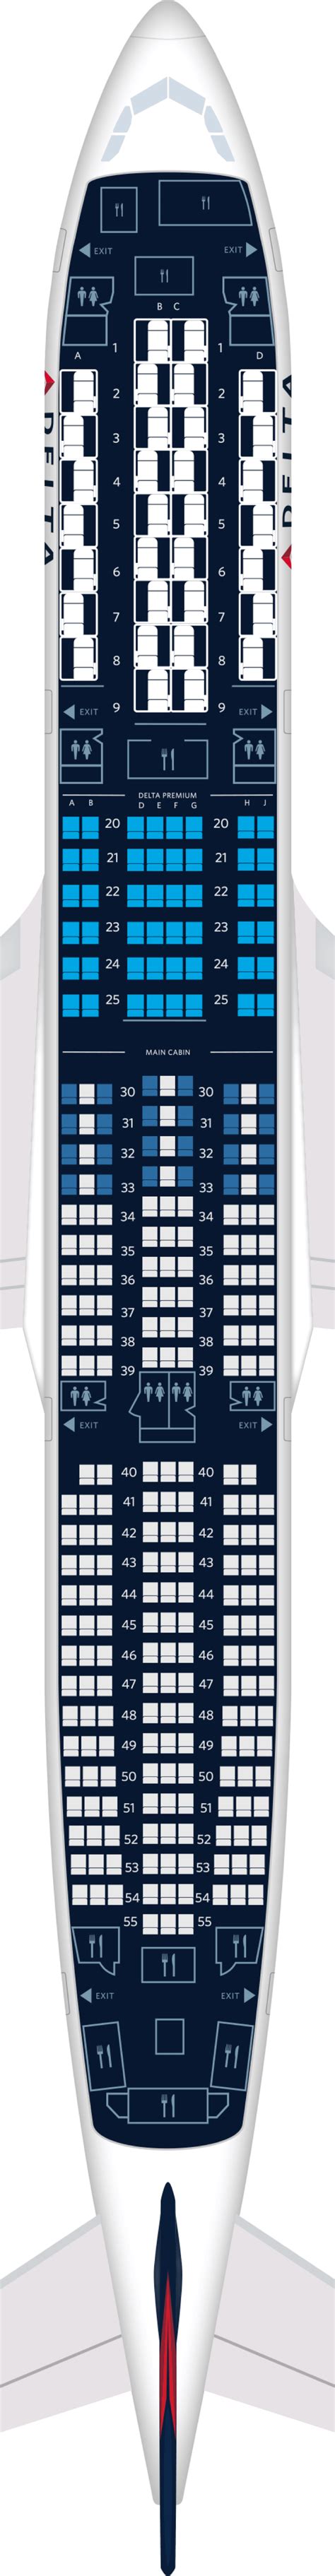 Airbus A350 900 Seating Plan